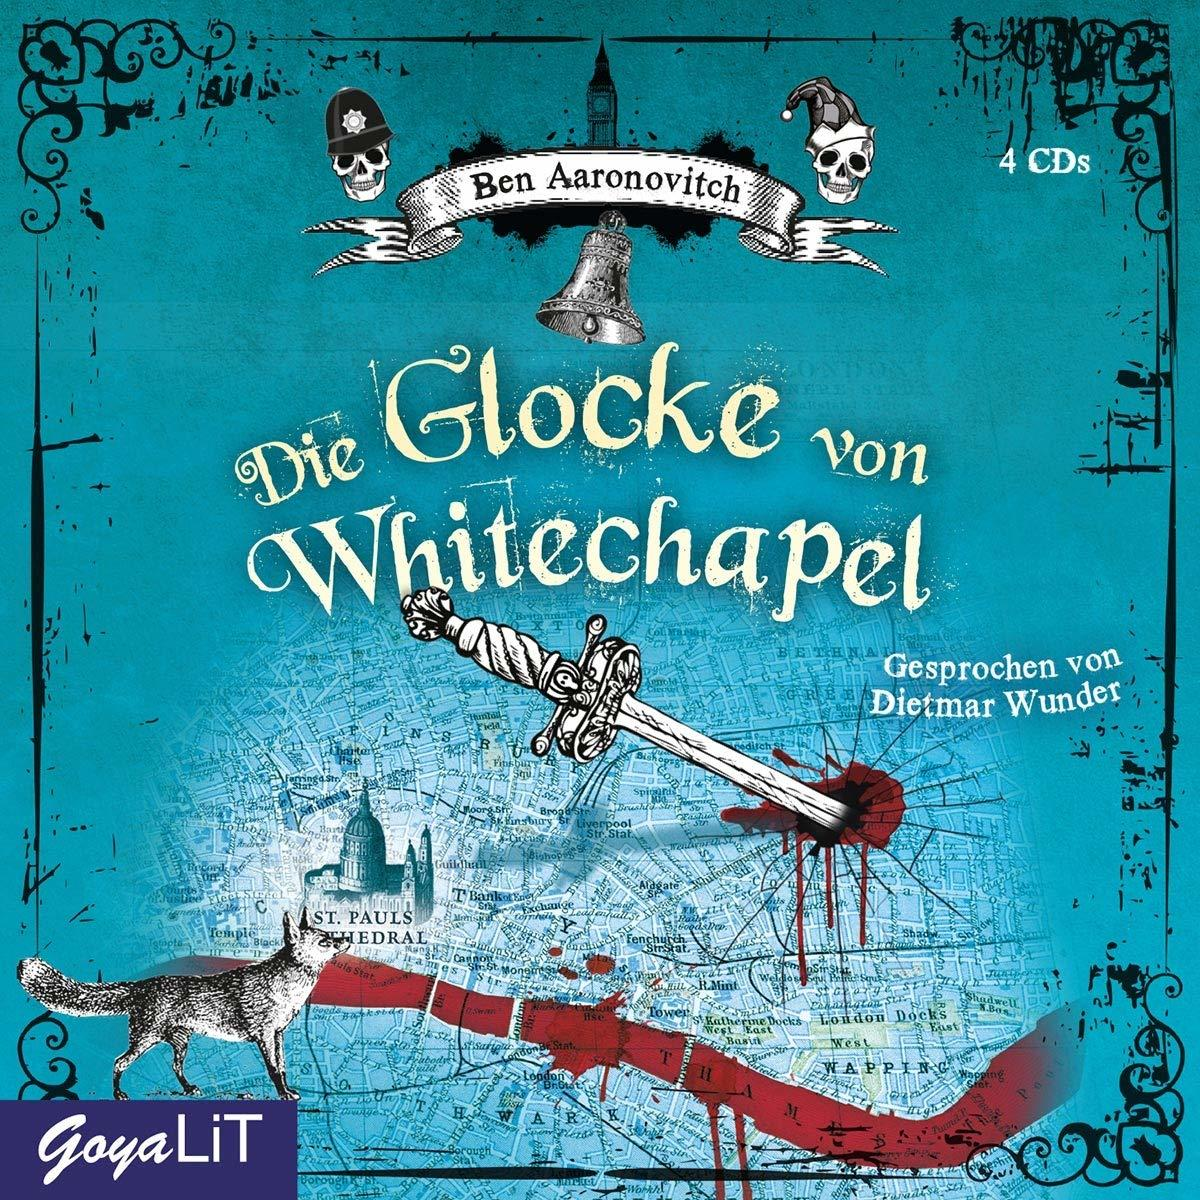 Von (CD) - Whitechapel Glocke Die - Ben Aaronovitch